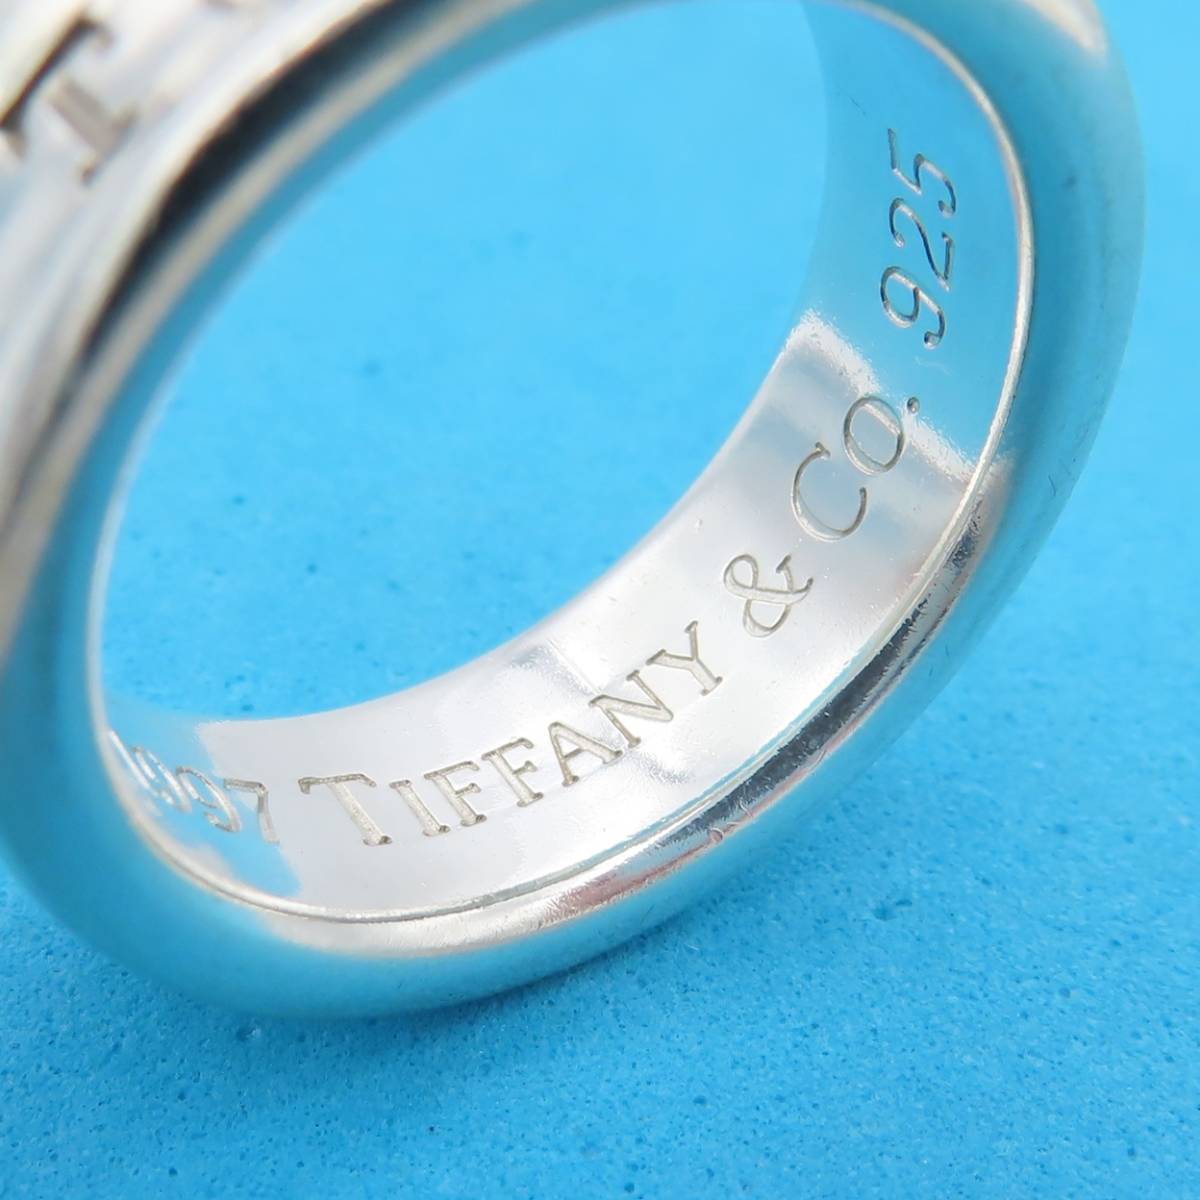 【送料無料】 美品 Tiffany&Co. ヴィンテージ ティファニー ナロー シルバー リング 9号 指輪 1837 SV925 OS100_画像4